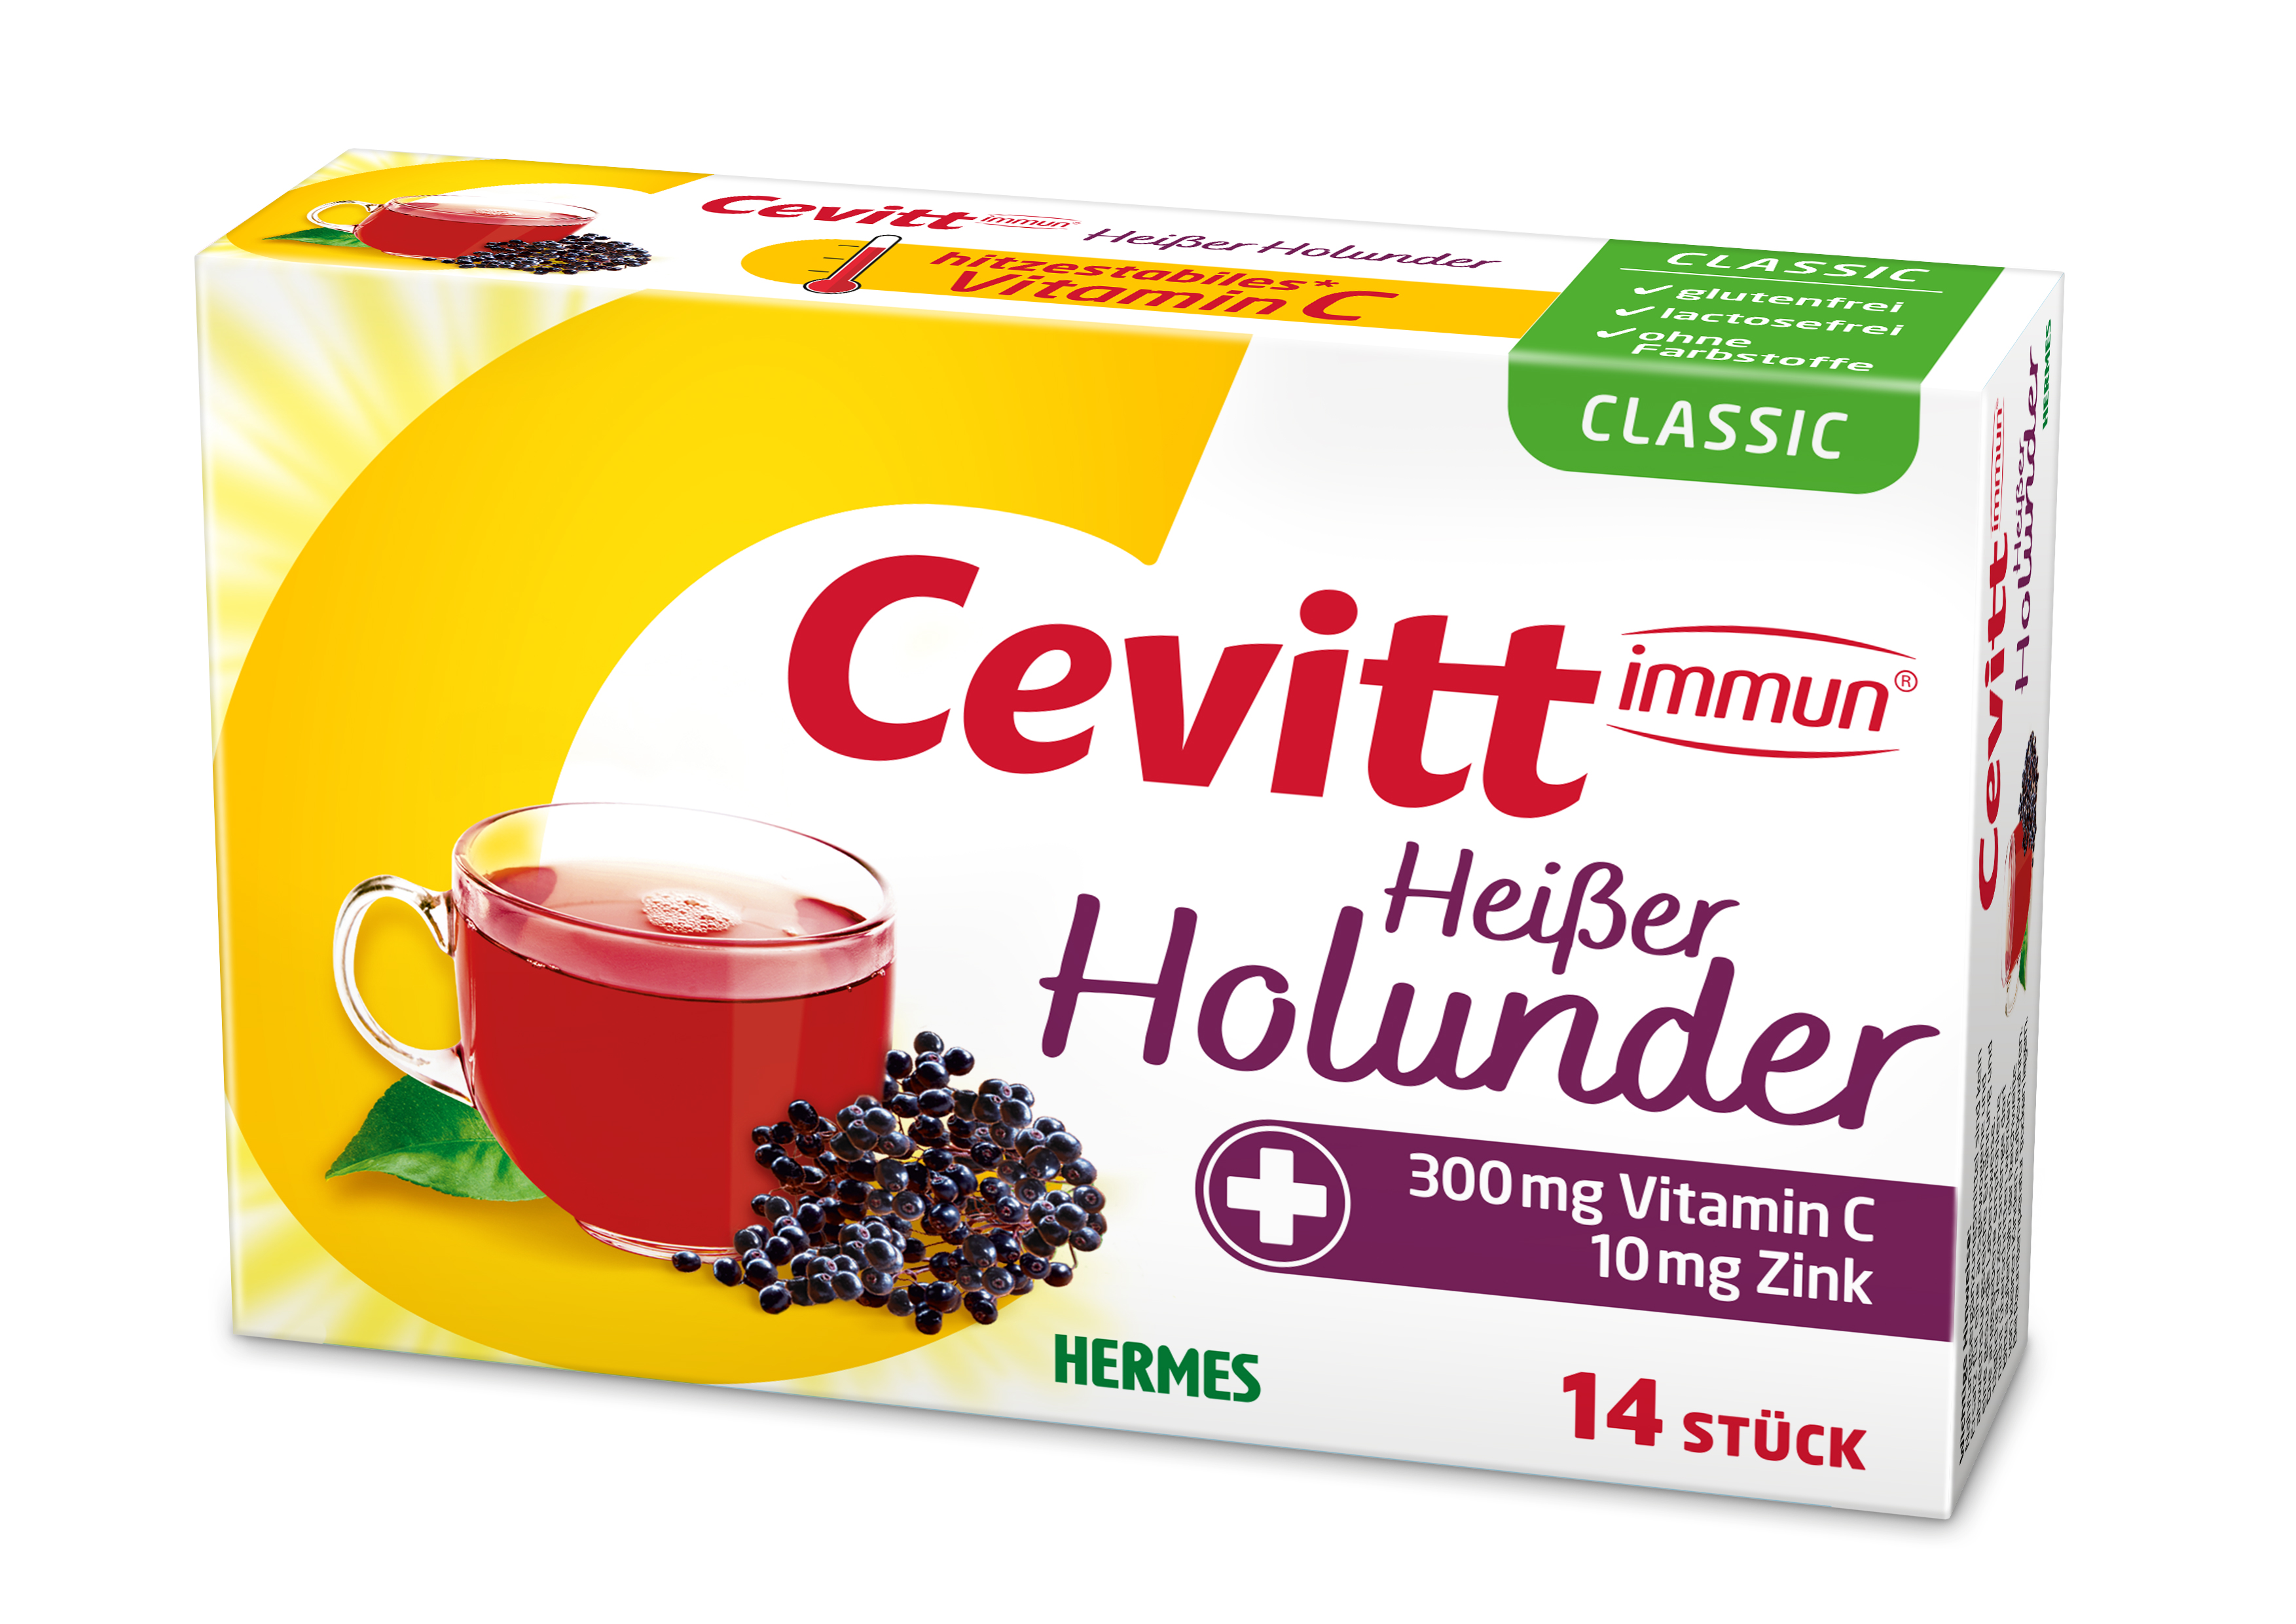 Cevitt immun® Heißer Hollunder Classic (mit Zucker) 14 ST